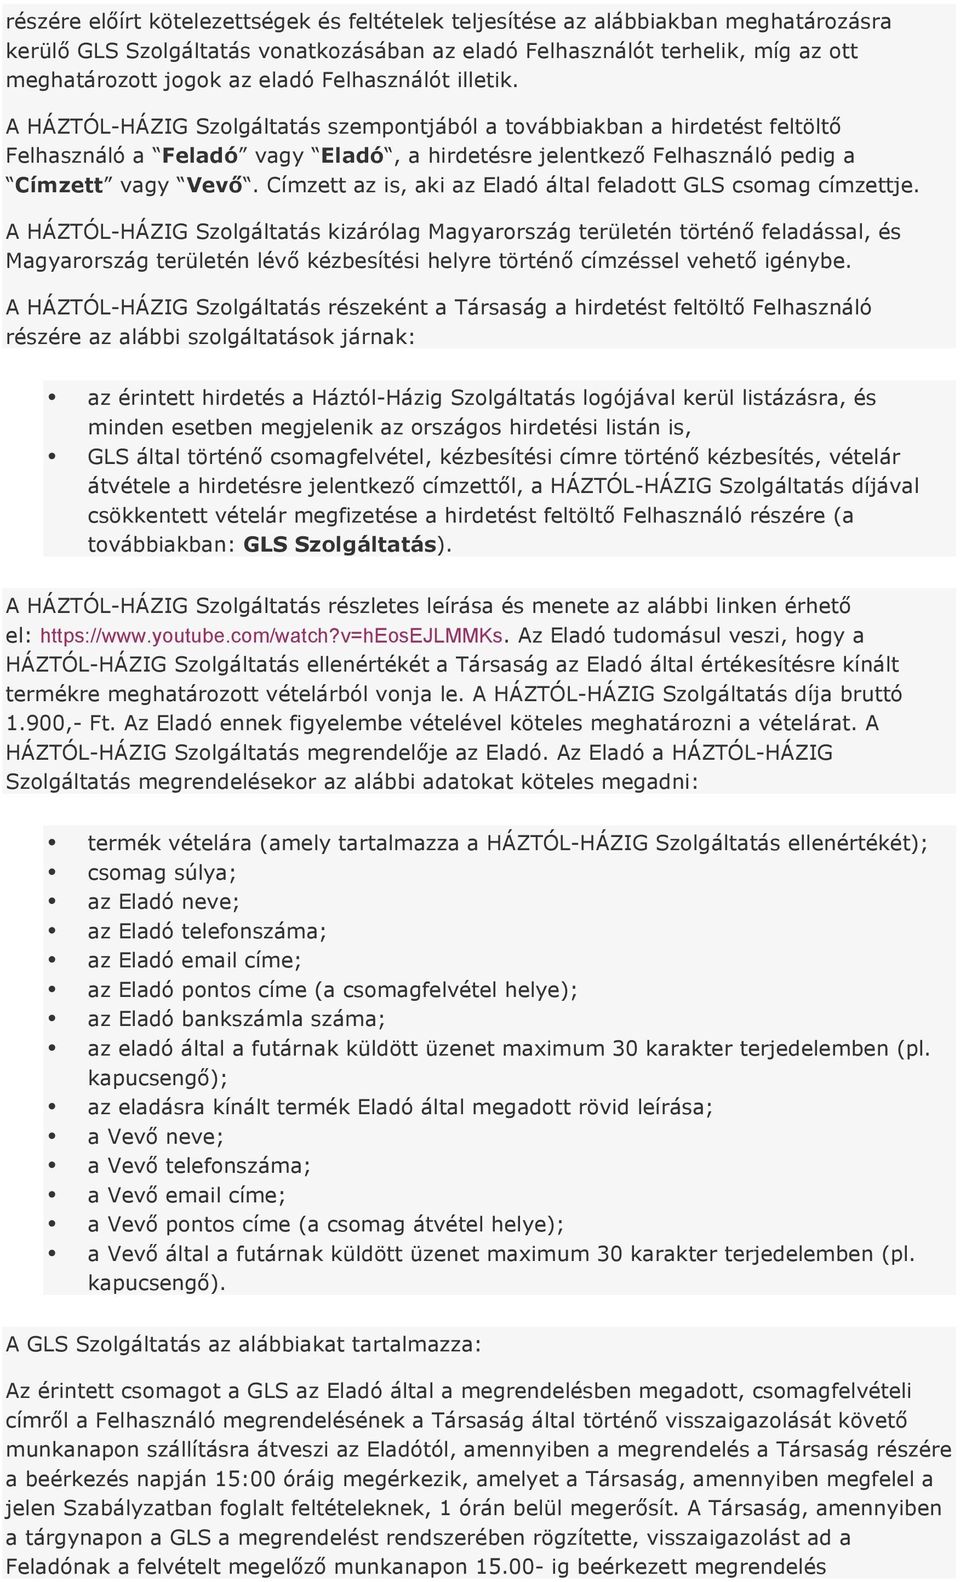 A jofogas.hu működési szabályzata - PDF Ingyenes letöltés